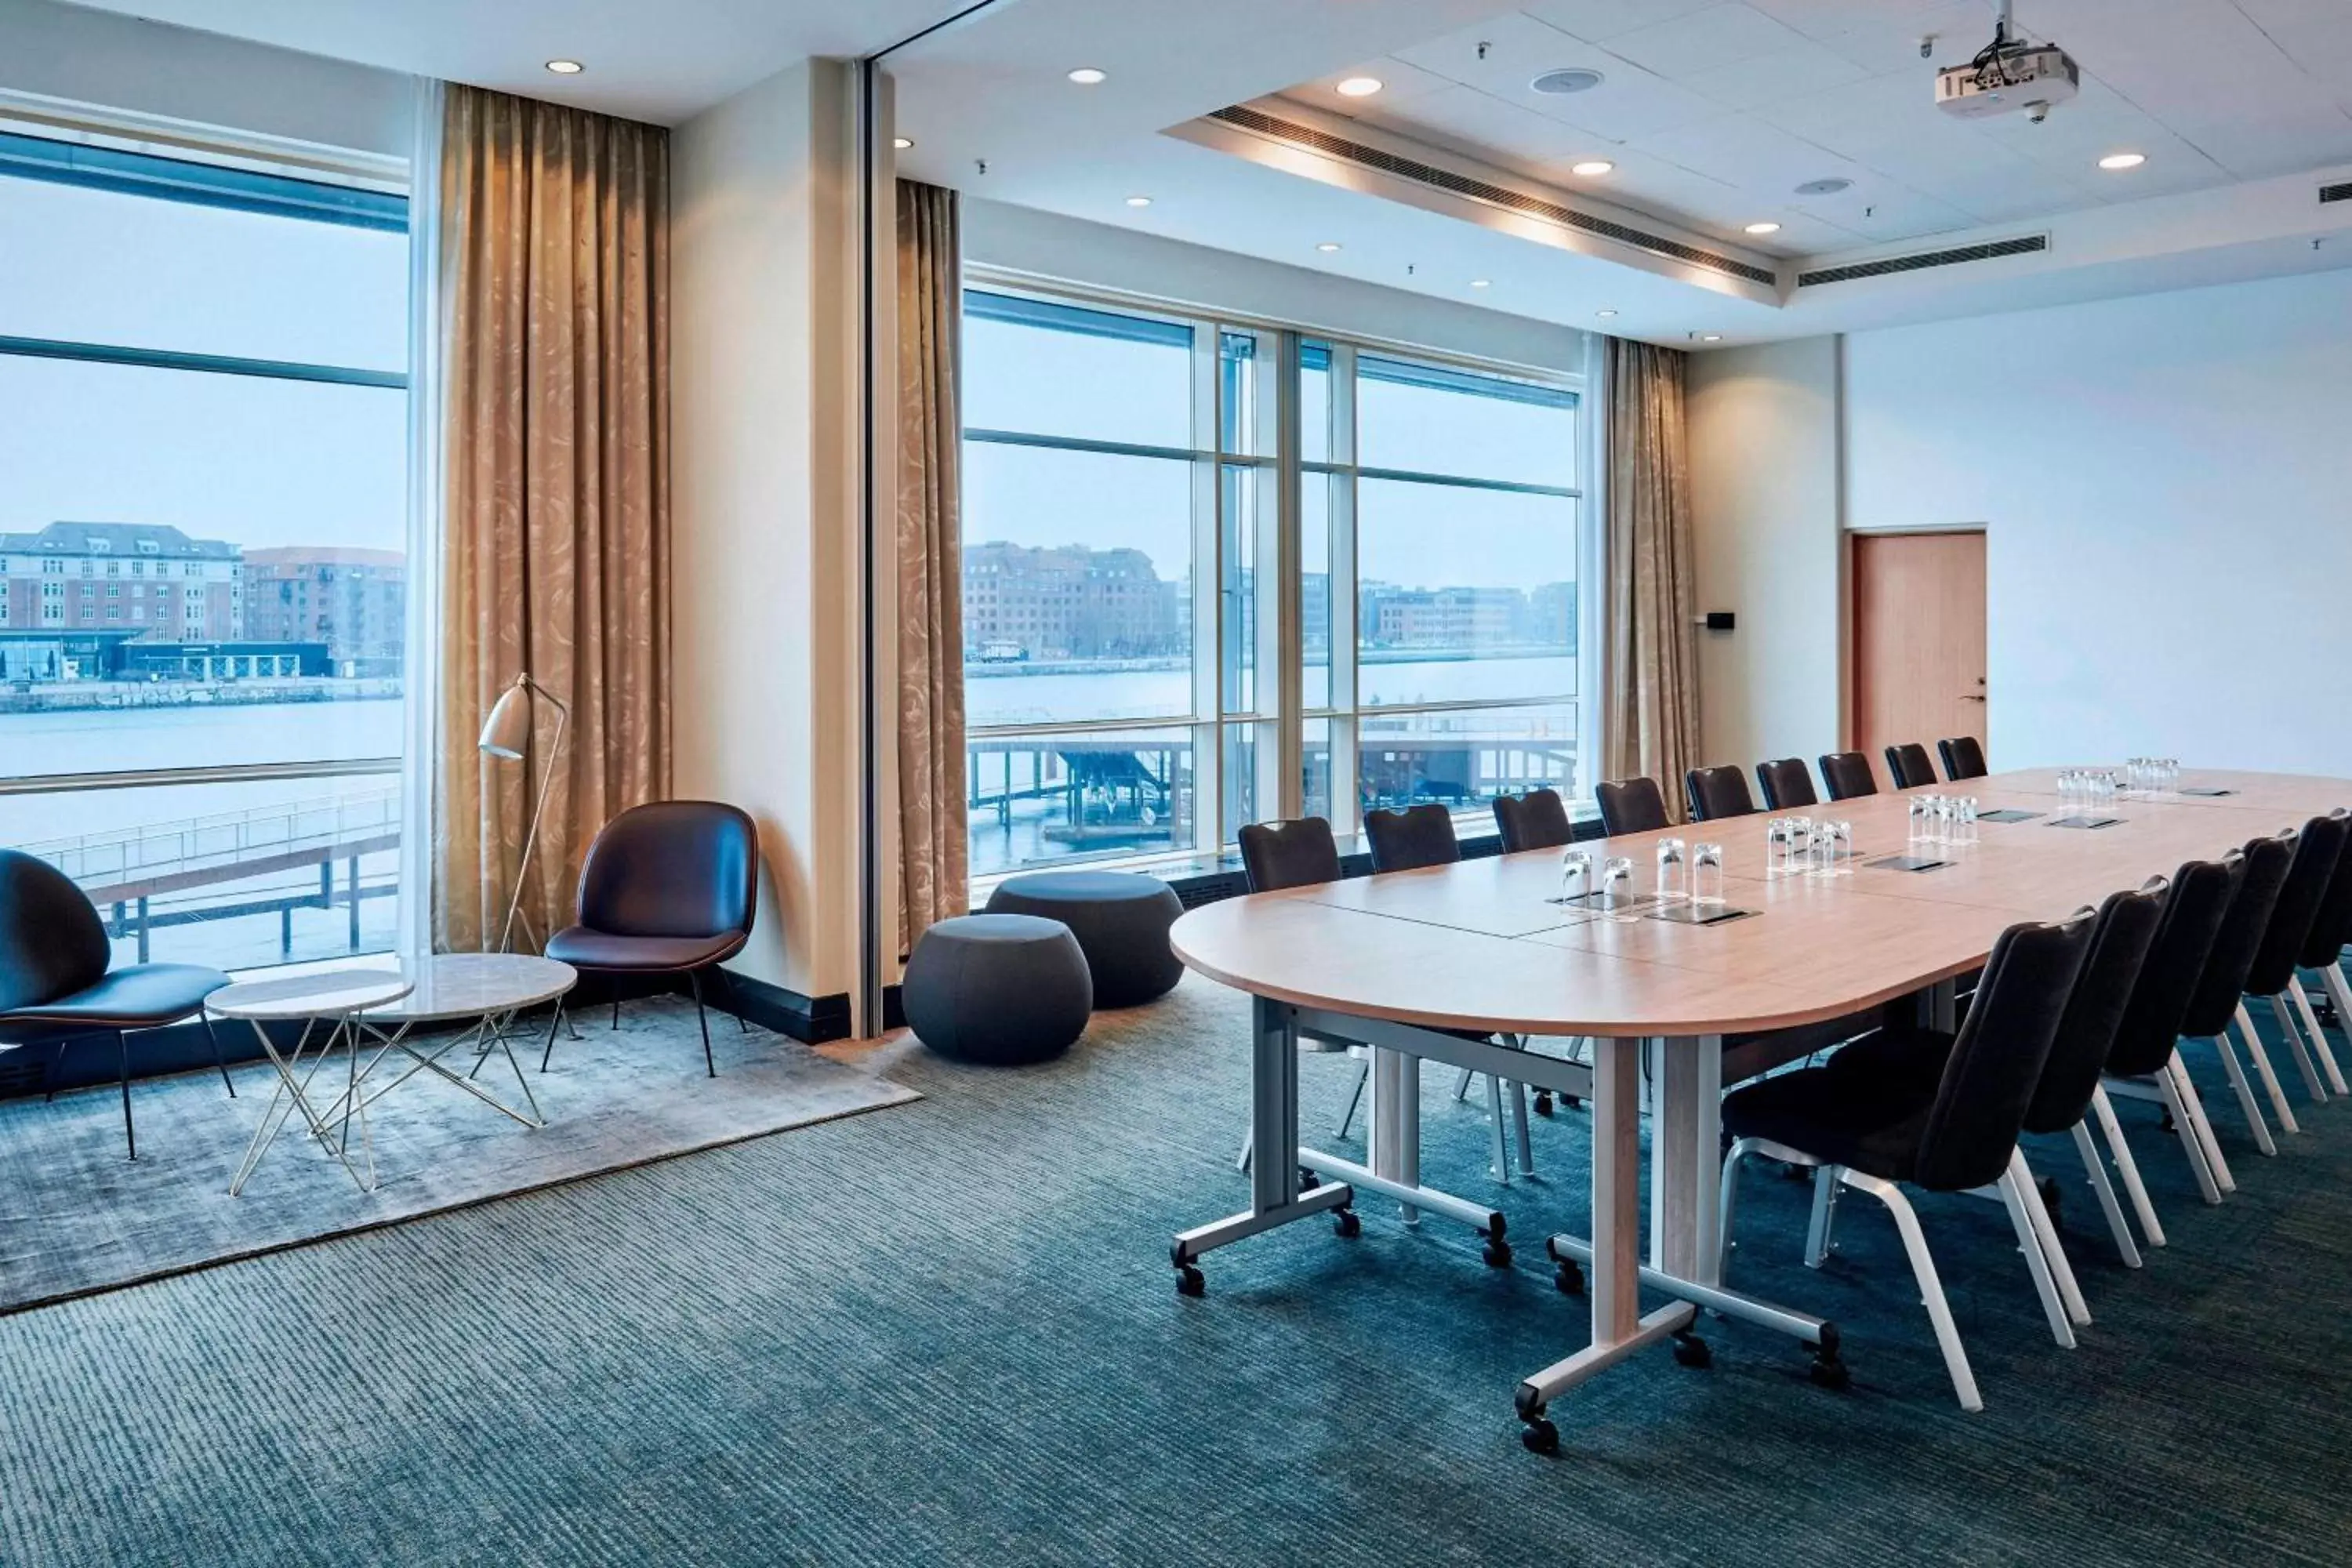 Meeting/conference room in Copenhagen Marriott Hotel